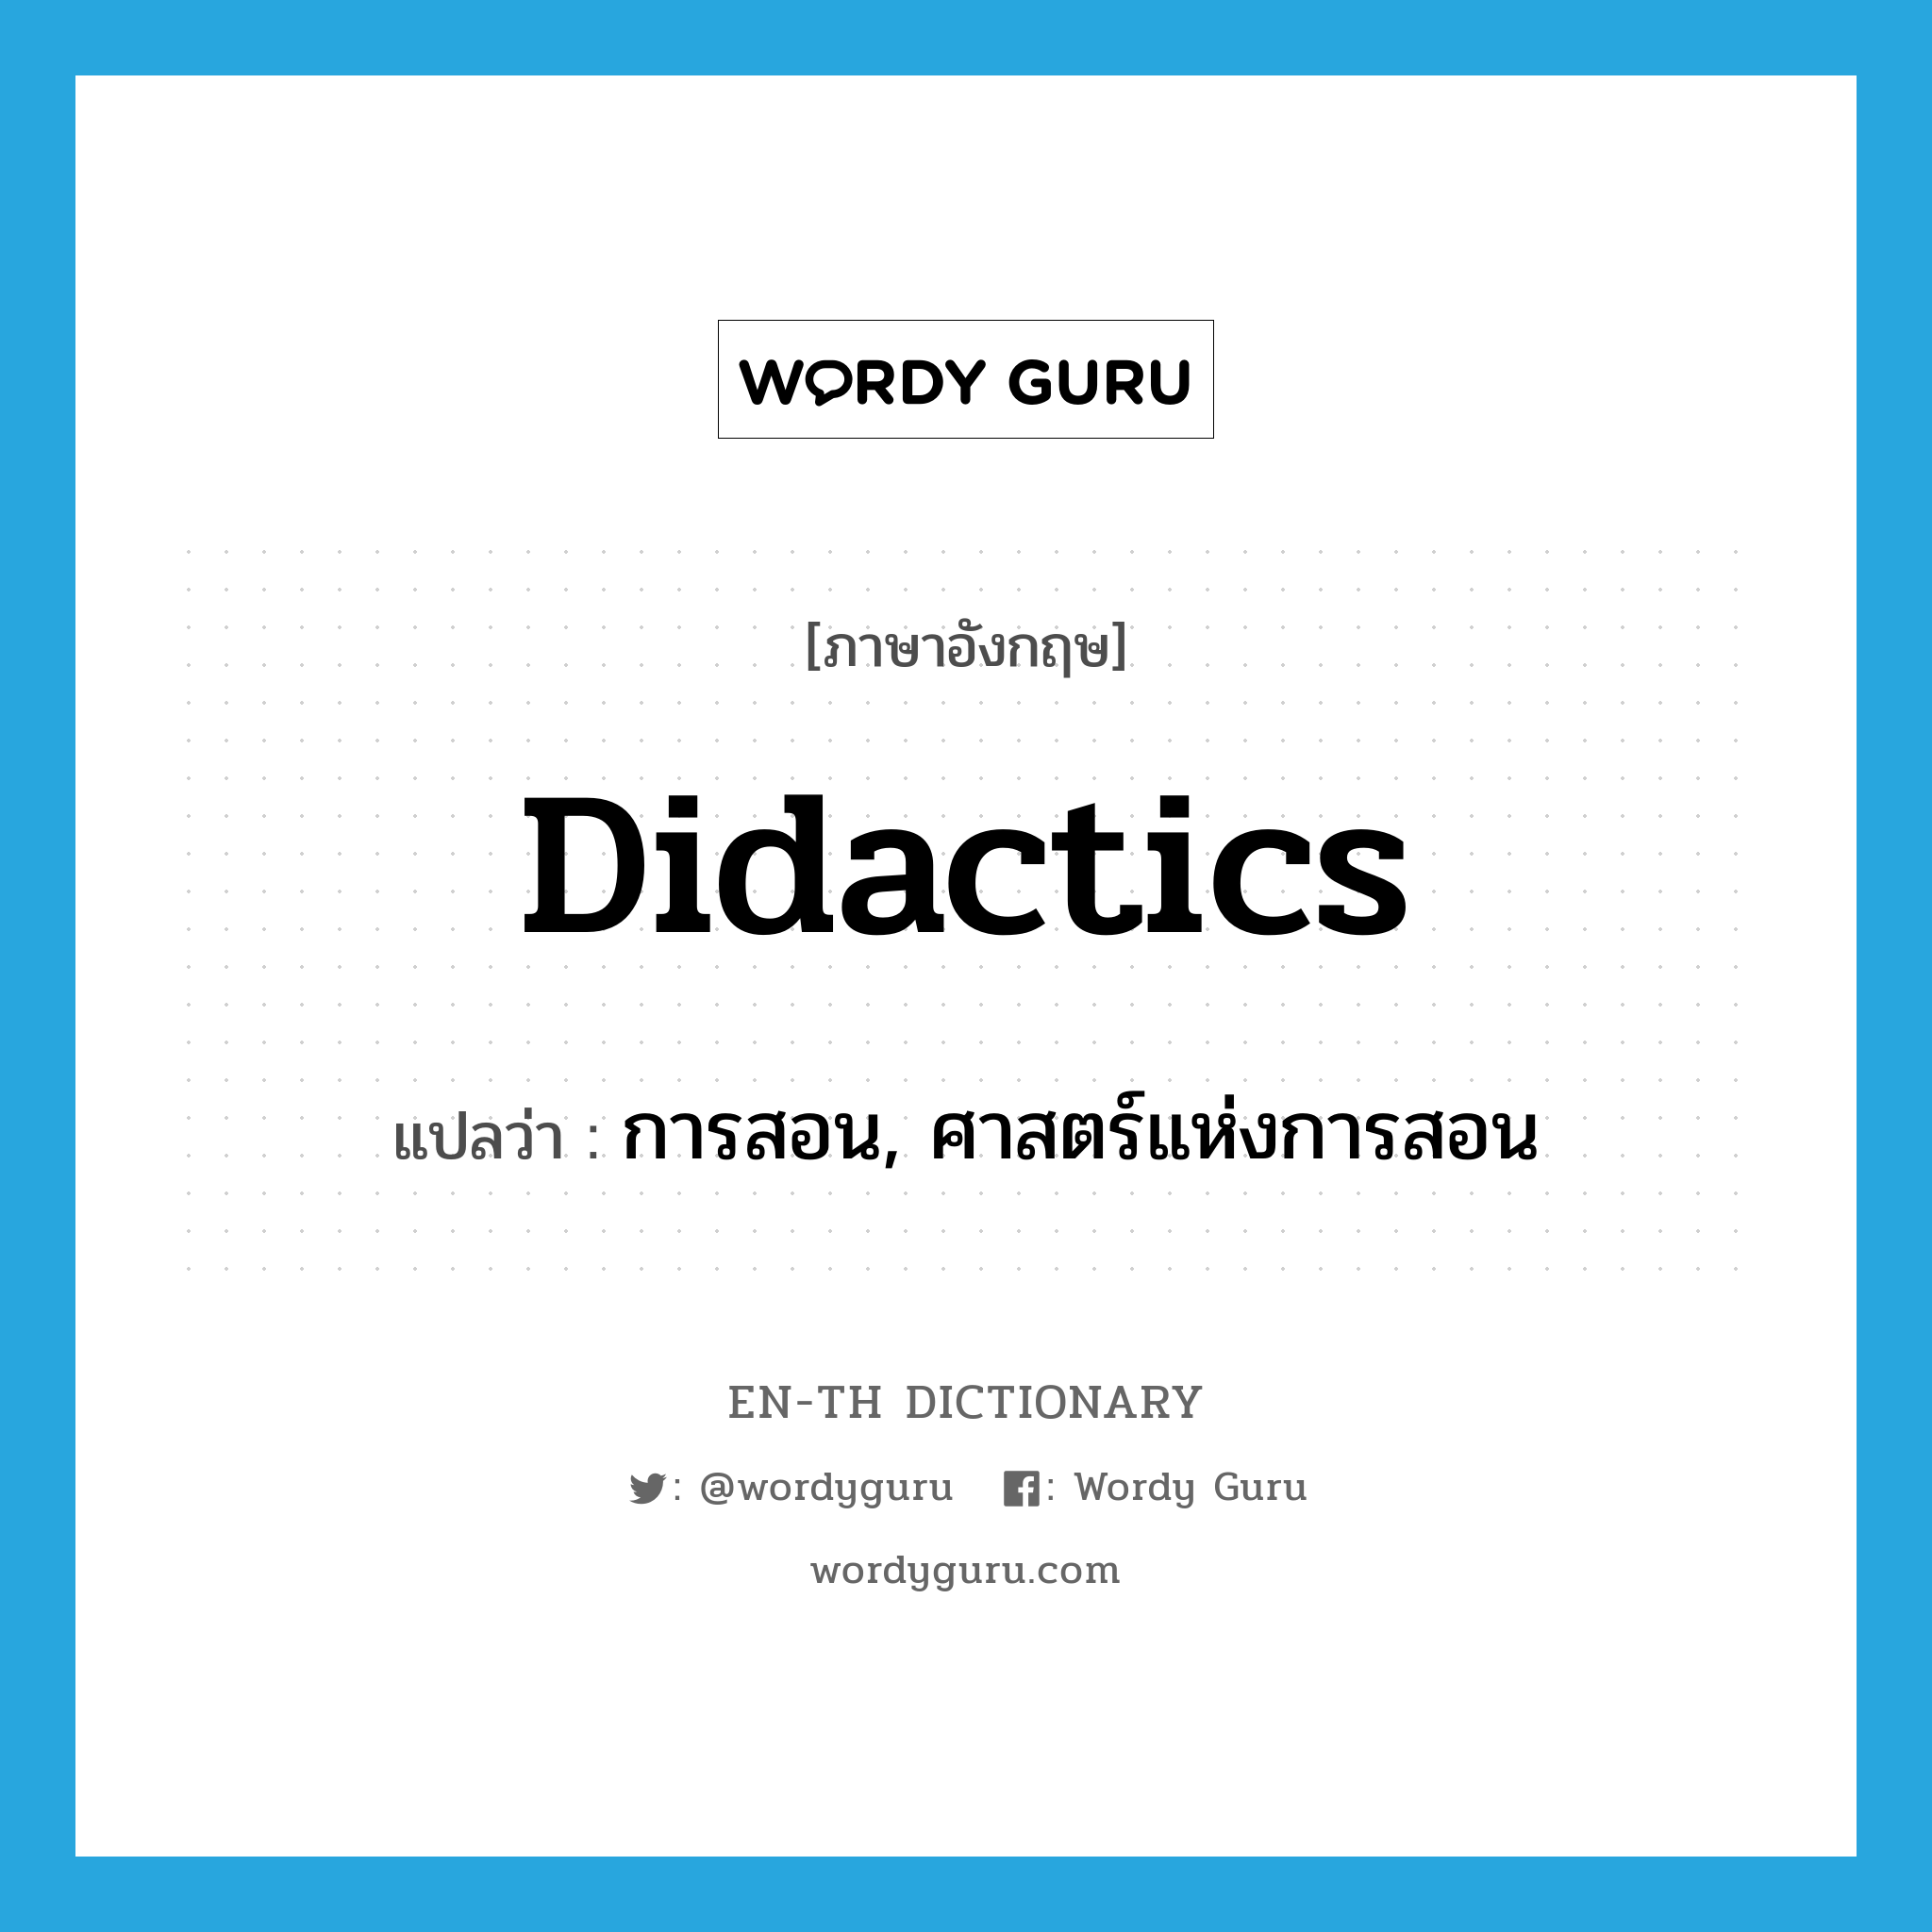 didactics แปลว่า?, คำศัพท์ภาษาอังกฤษ didactics แปลว่า การสอน, ศาสตร์แห่งการสอน ประเภท N หมวด N